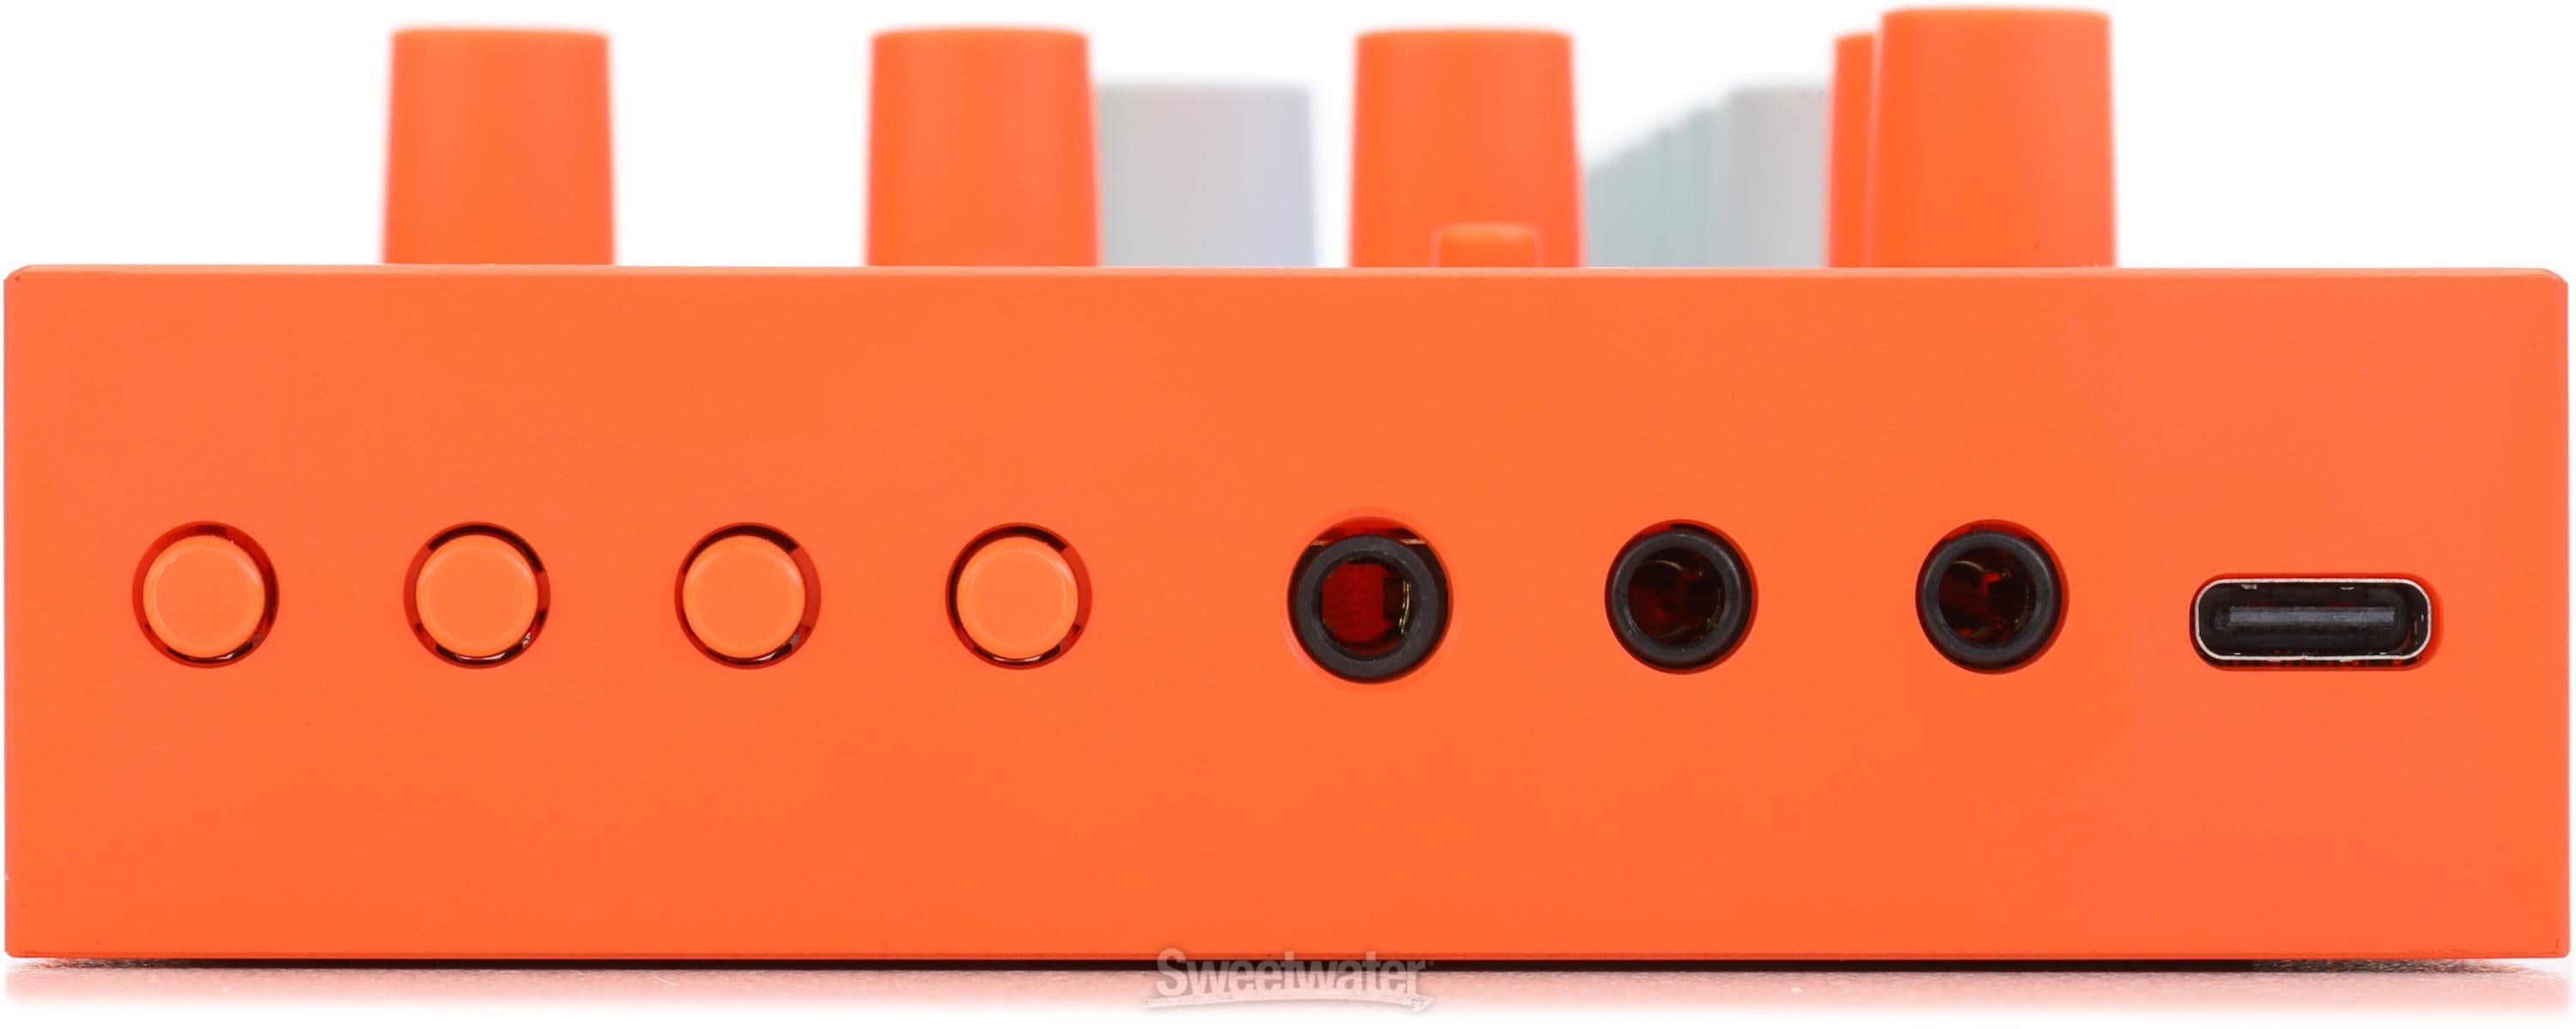 Yamaha Seqtrak Mobile Music Ideastation - Orange & Gray | Sweetwater